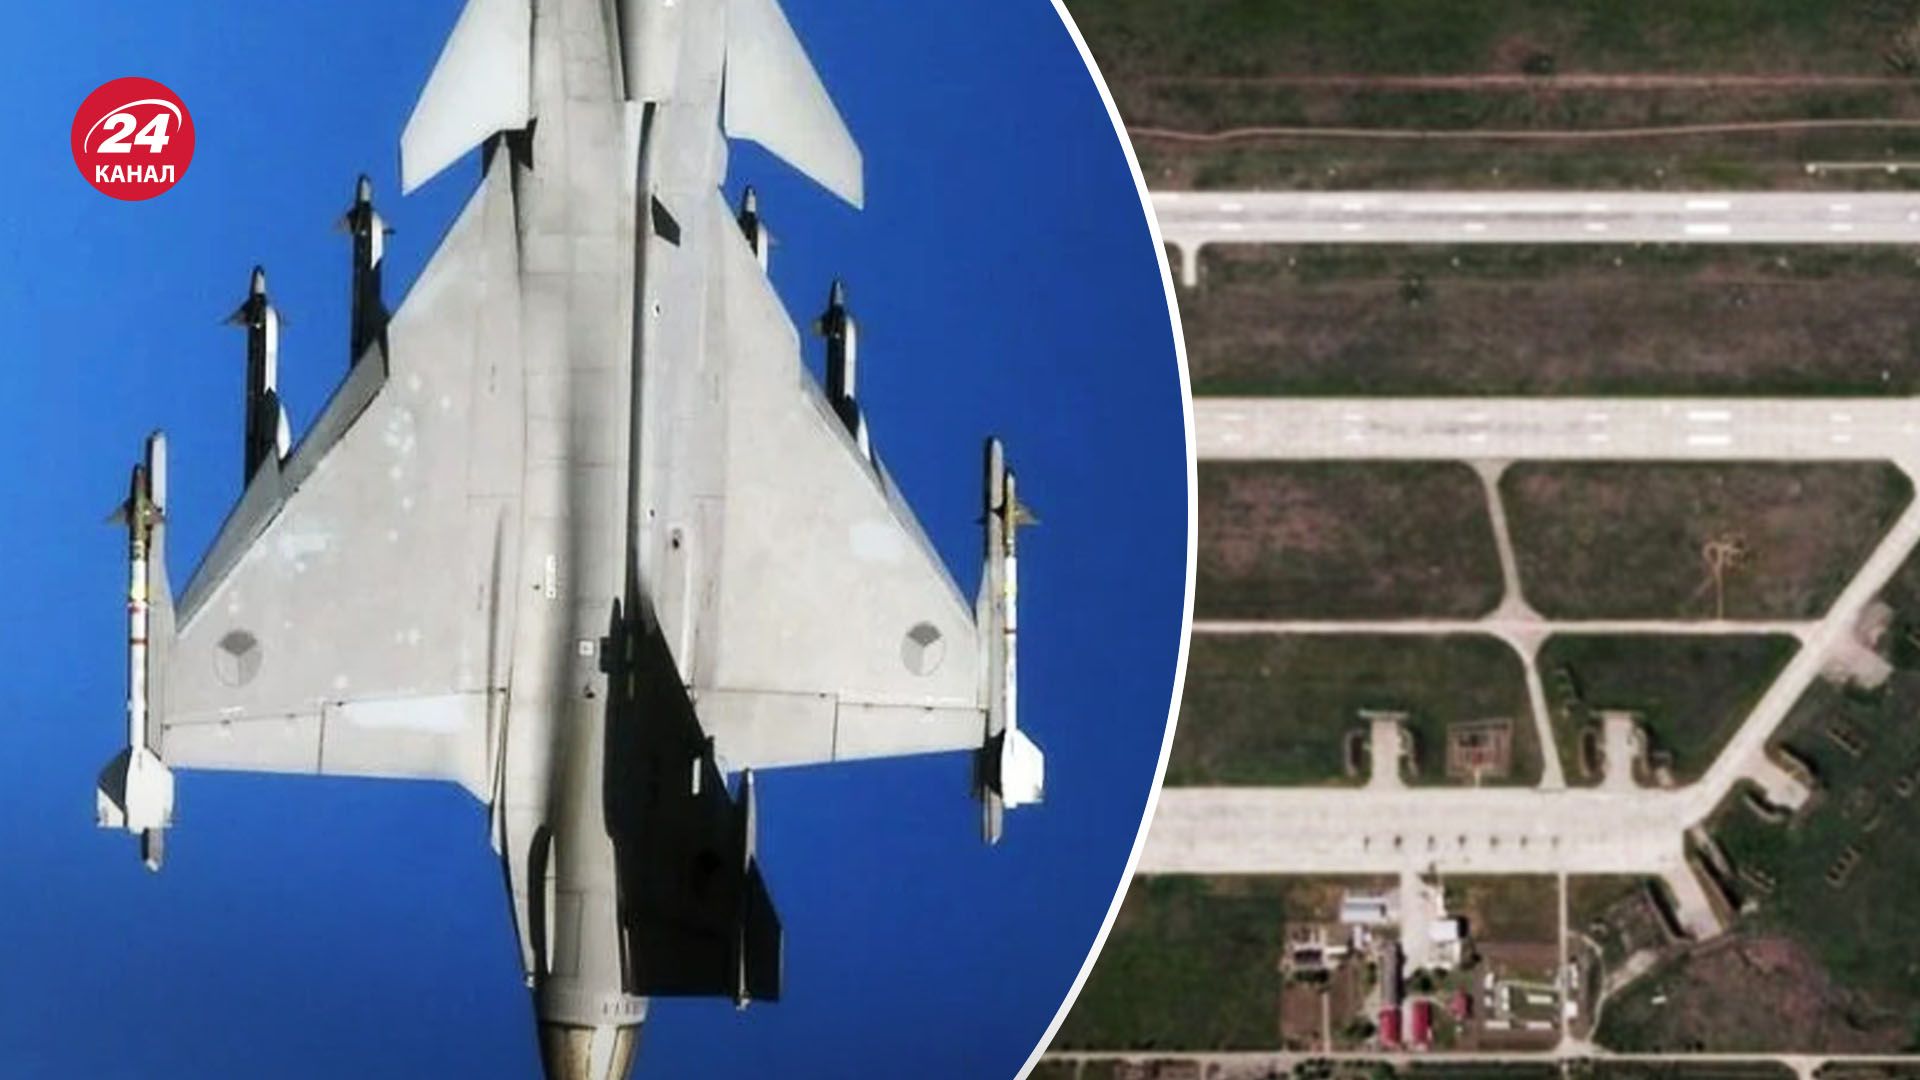 Швеция может передать истребители Gripen - сколько нужно времени на подготовку - 24 Канал